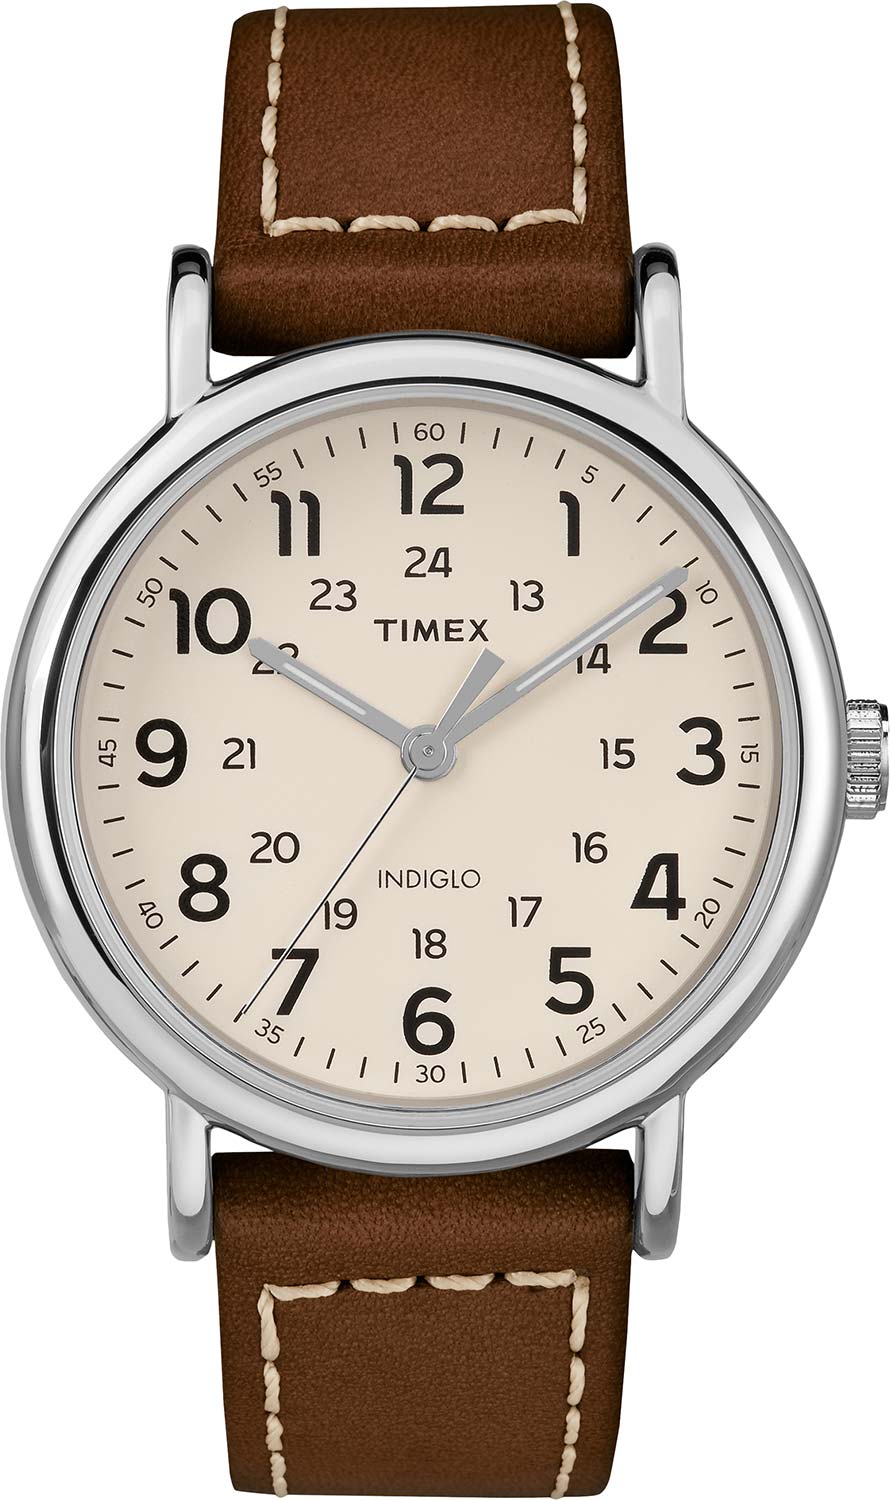   Timex TW2R42400